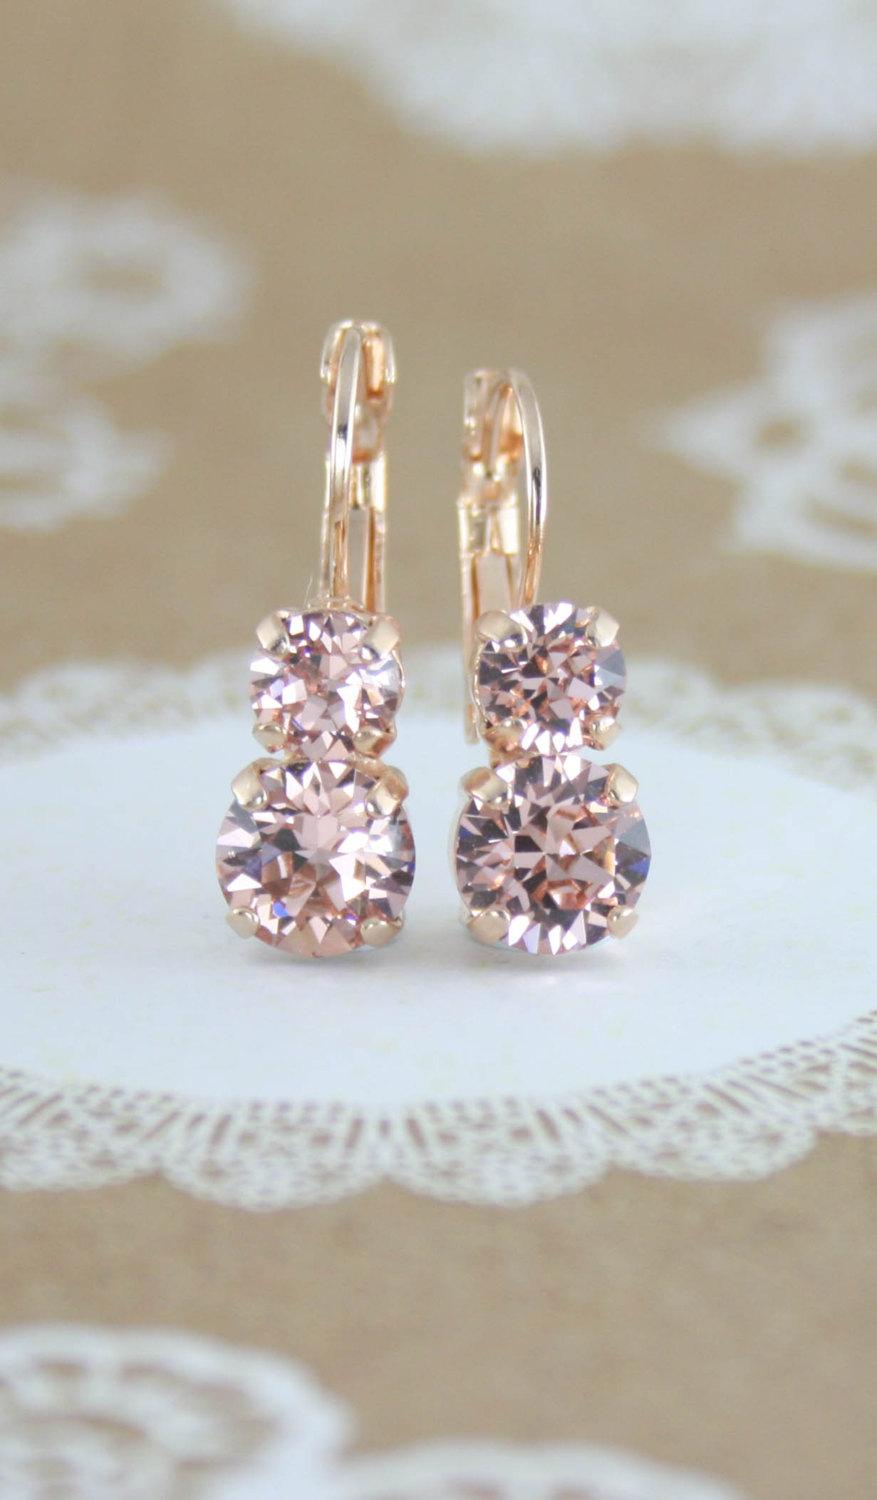 Свадьба - Blush earrings,blush crystal earrings,blush bridesmaid earrings,swarovski blush,rose gold earrings,rose gold blush earrings,blush wedding